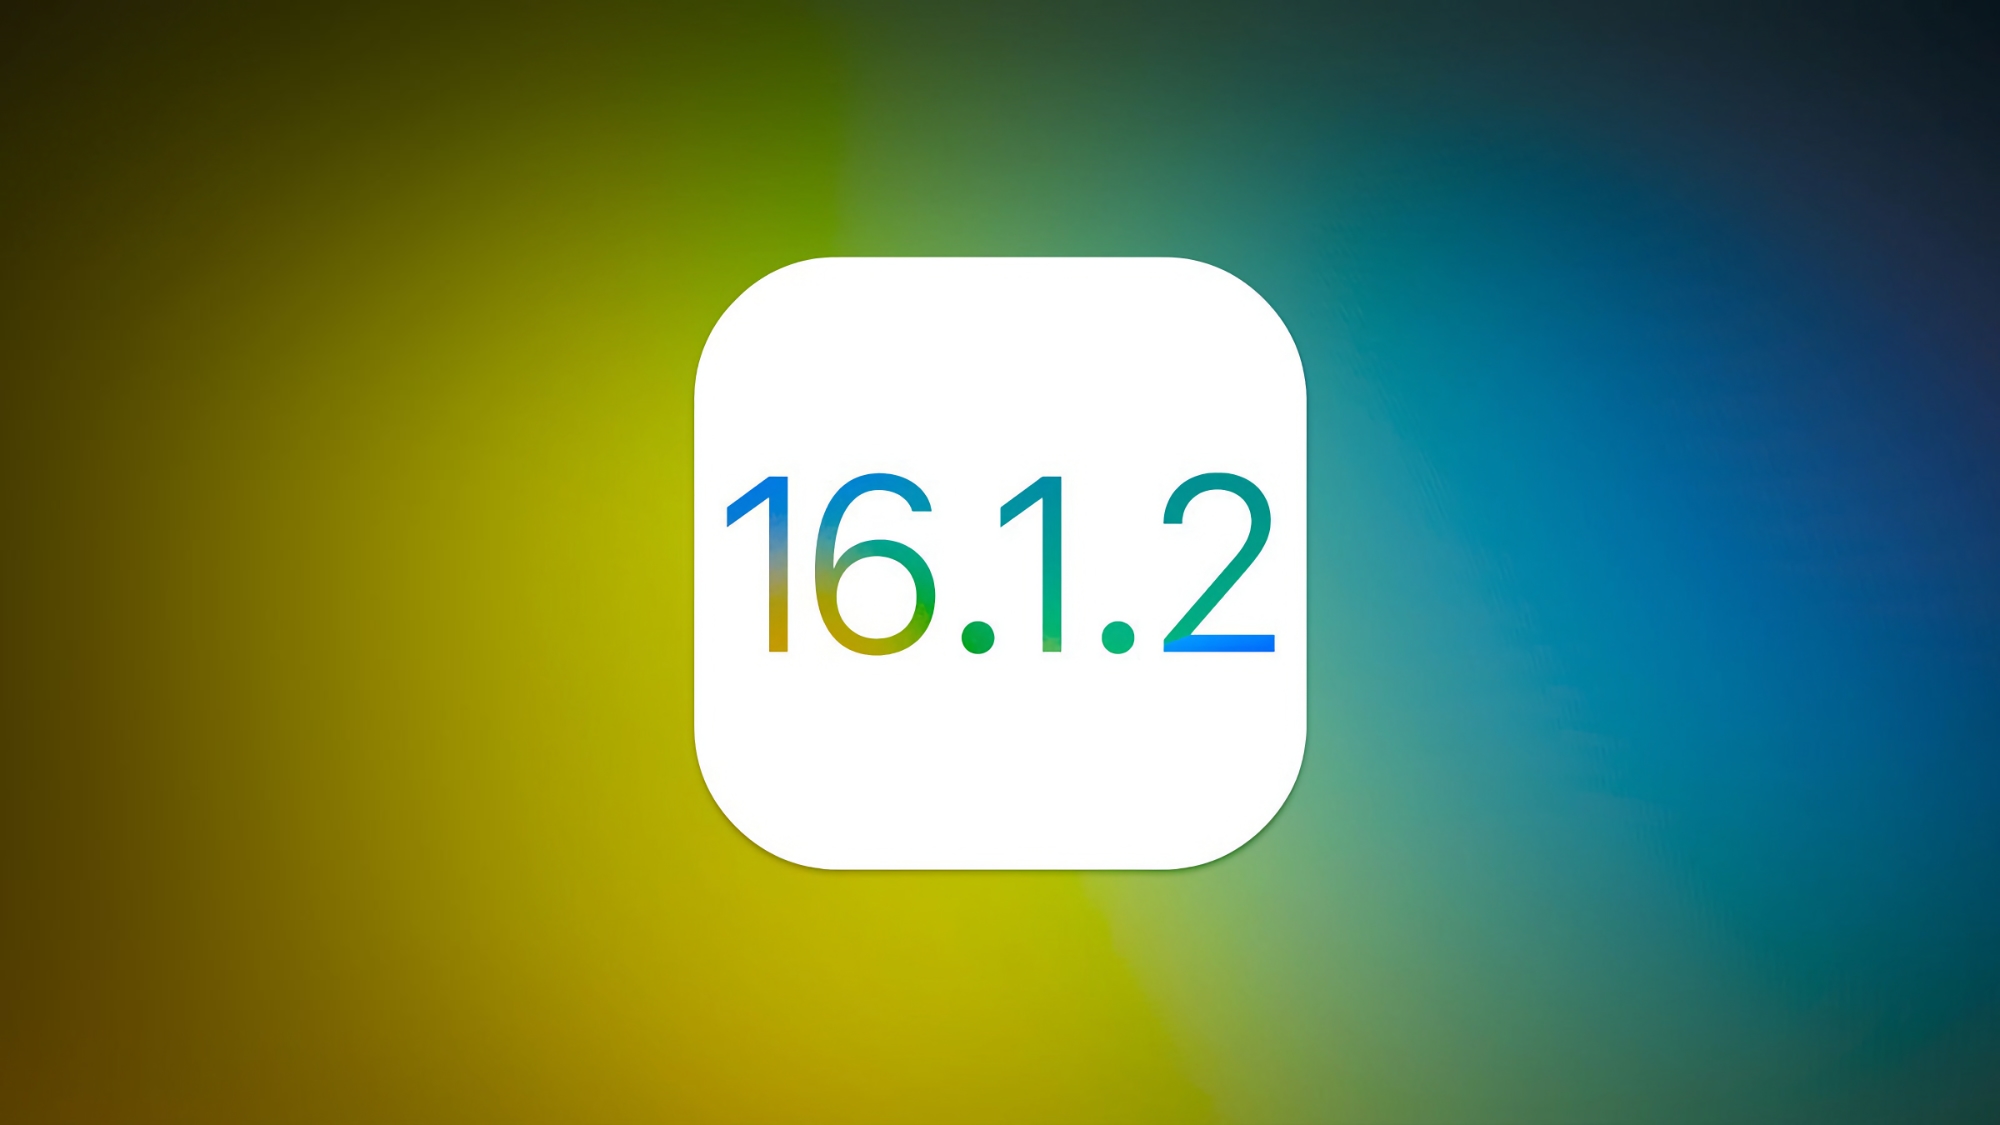 Apple wydaje iOS 16.1.2 dla iPhone'ów: co nowego i kiedy spodziewać się aktualizacji